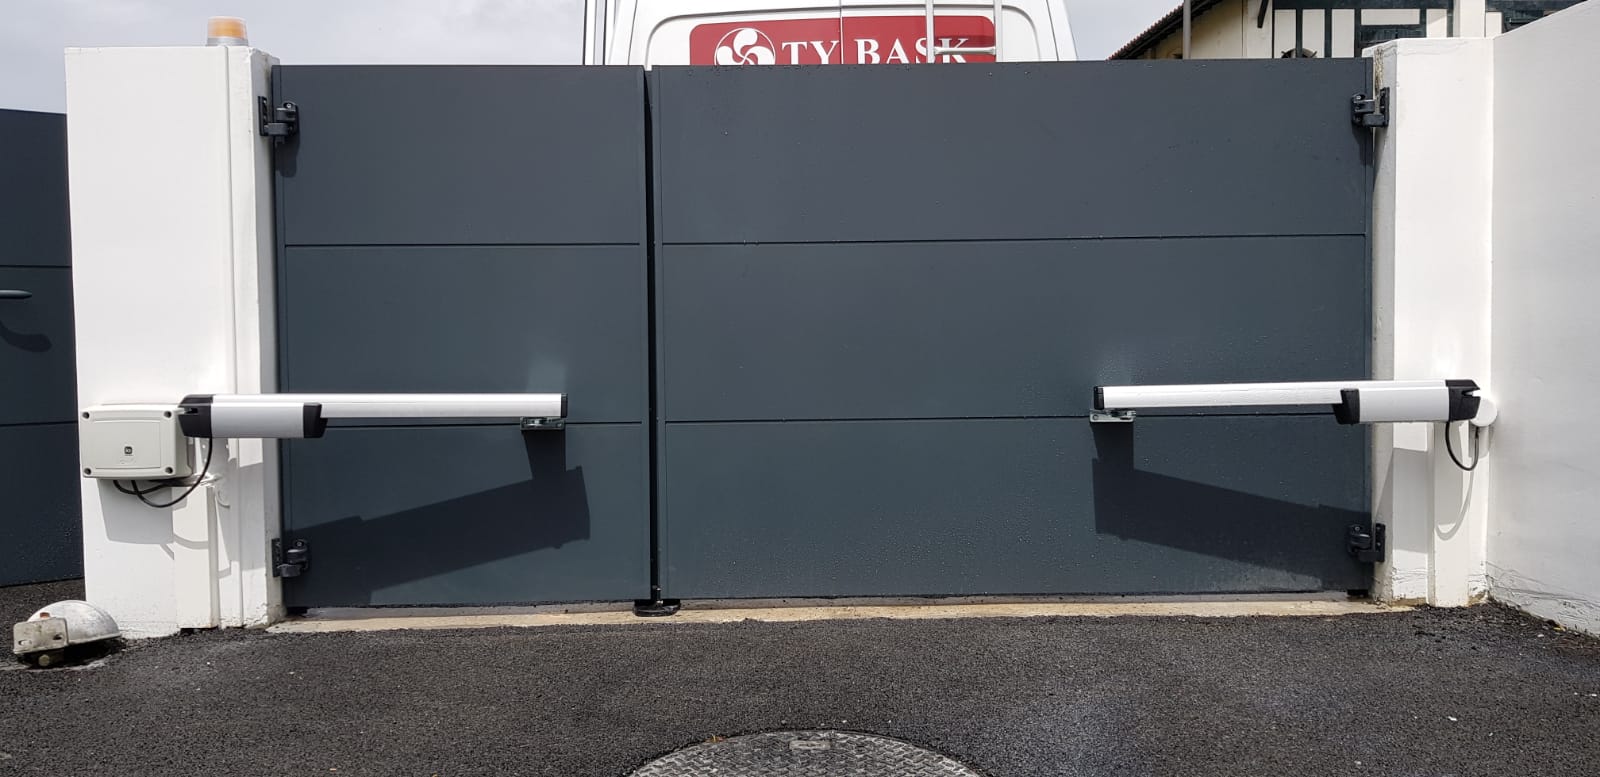 Exemple de réalisation Ty Bask : pose d'un portail et d'un portillon de la gamme Klavel de Cadiou. Accompagnement sur-mesure pour la motorisation de faible encombrement.